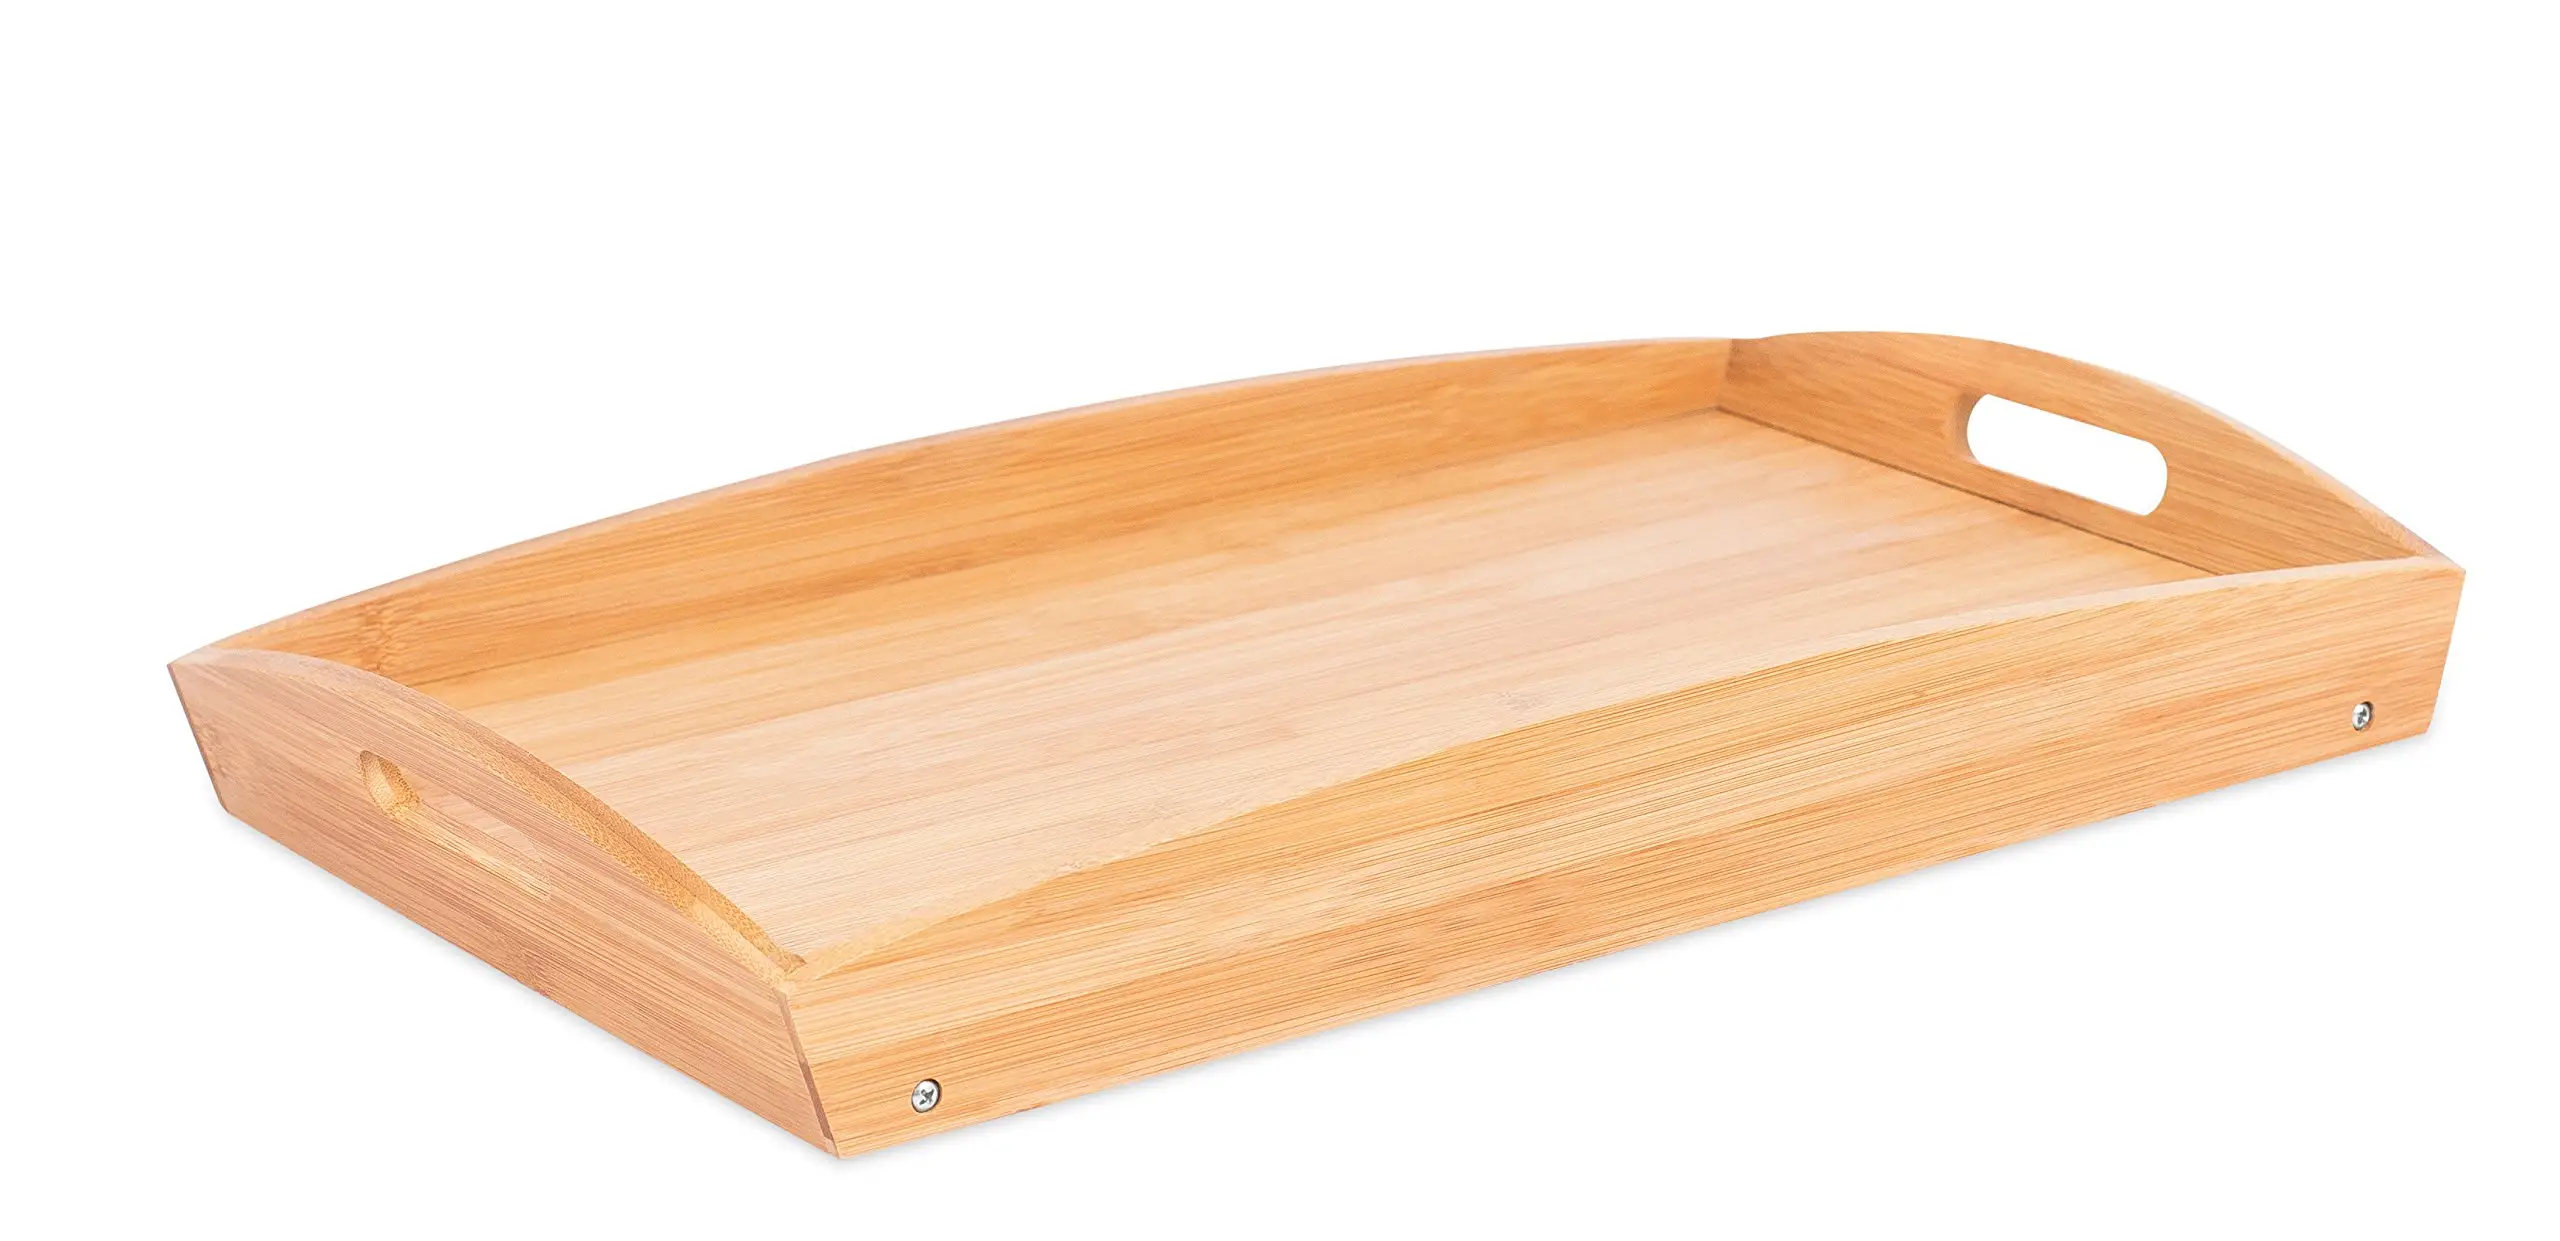 Jaju — plateau de lit en bambou, plateau de service pour le petit déjeuner avec pieds pliants, pour la maison